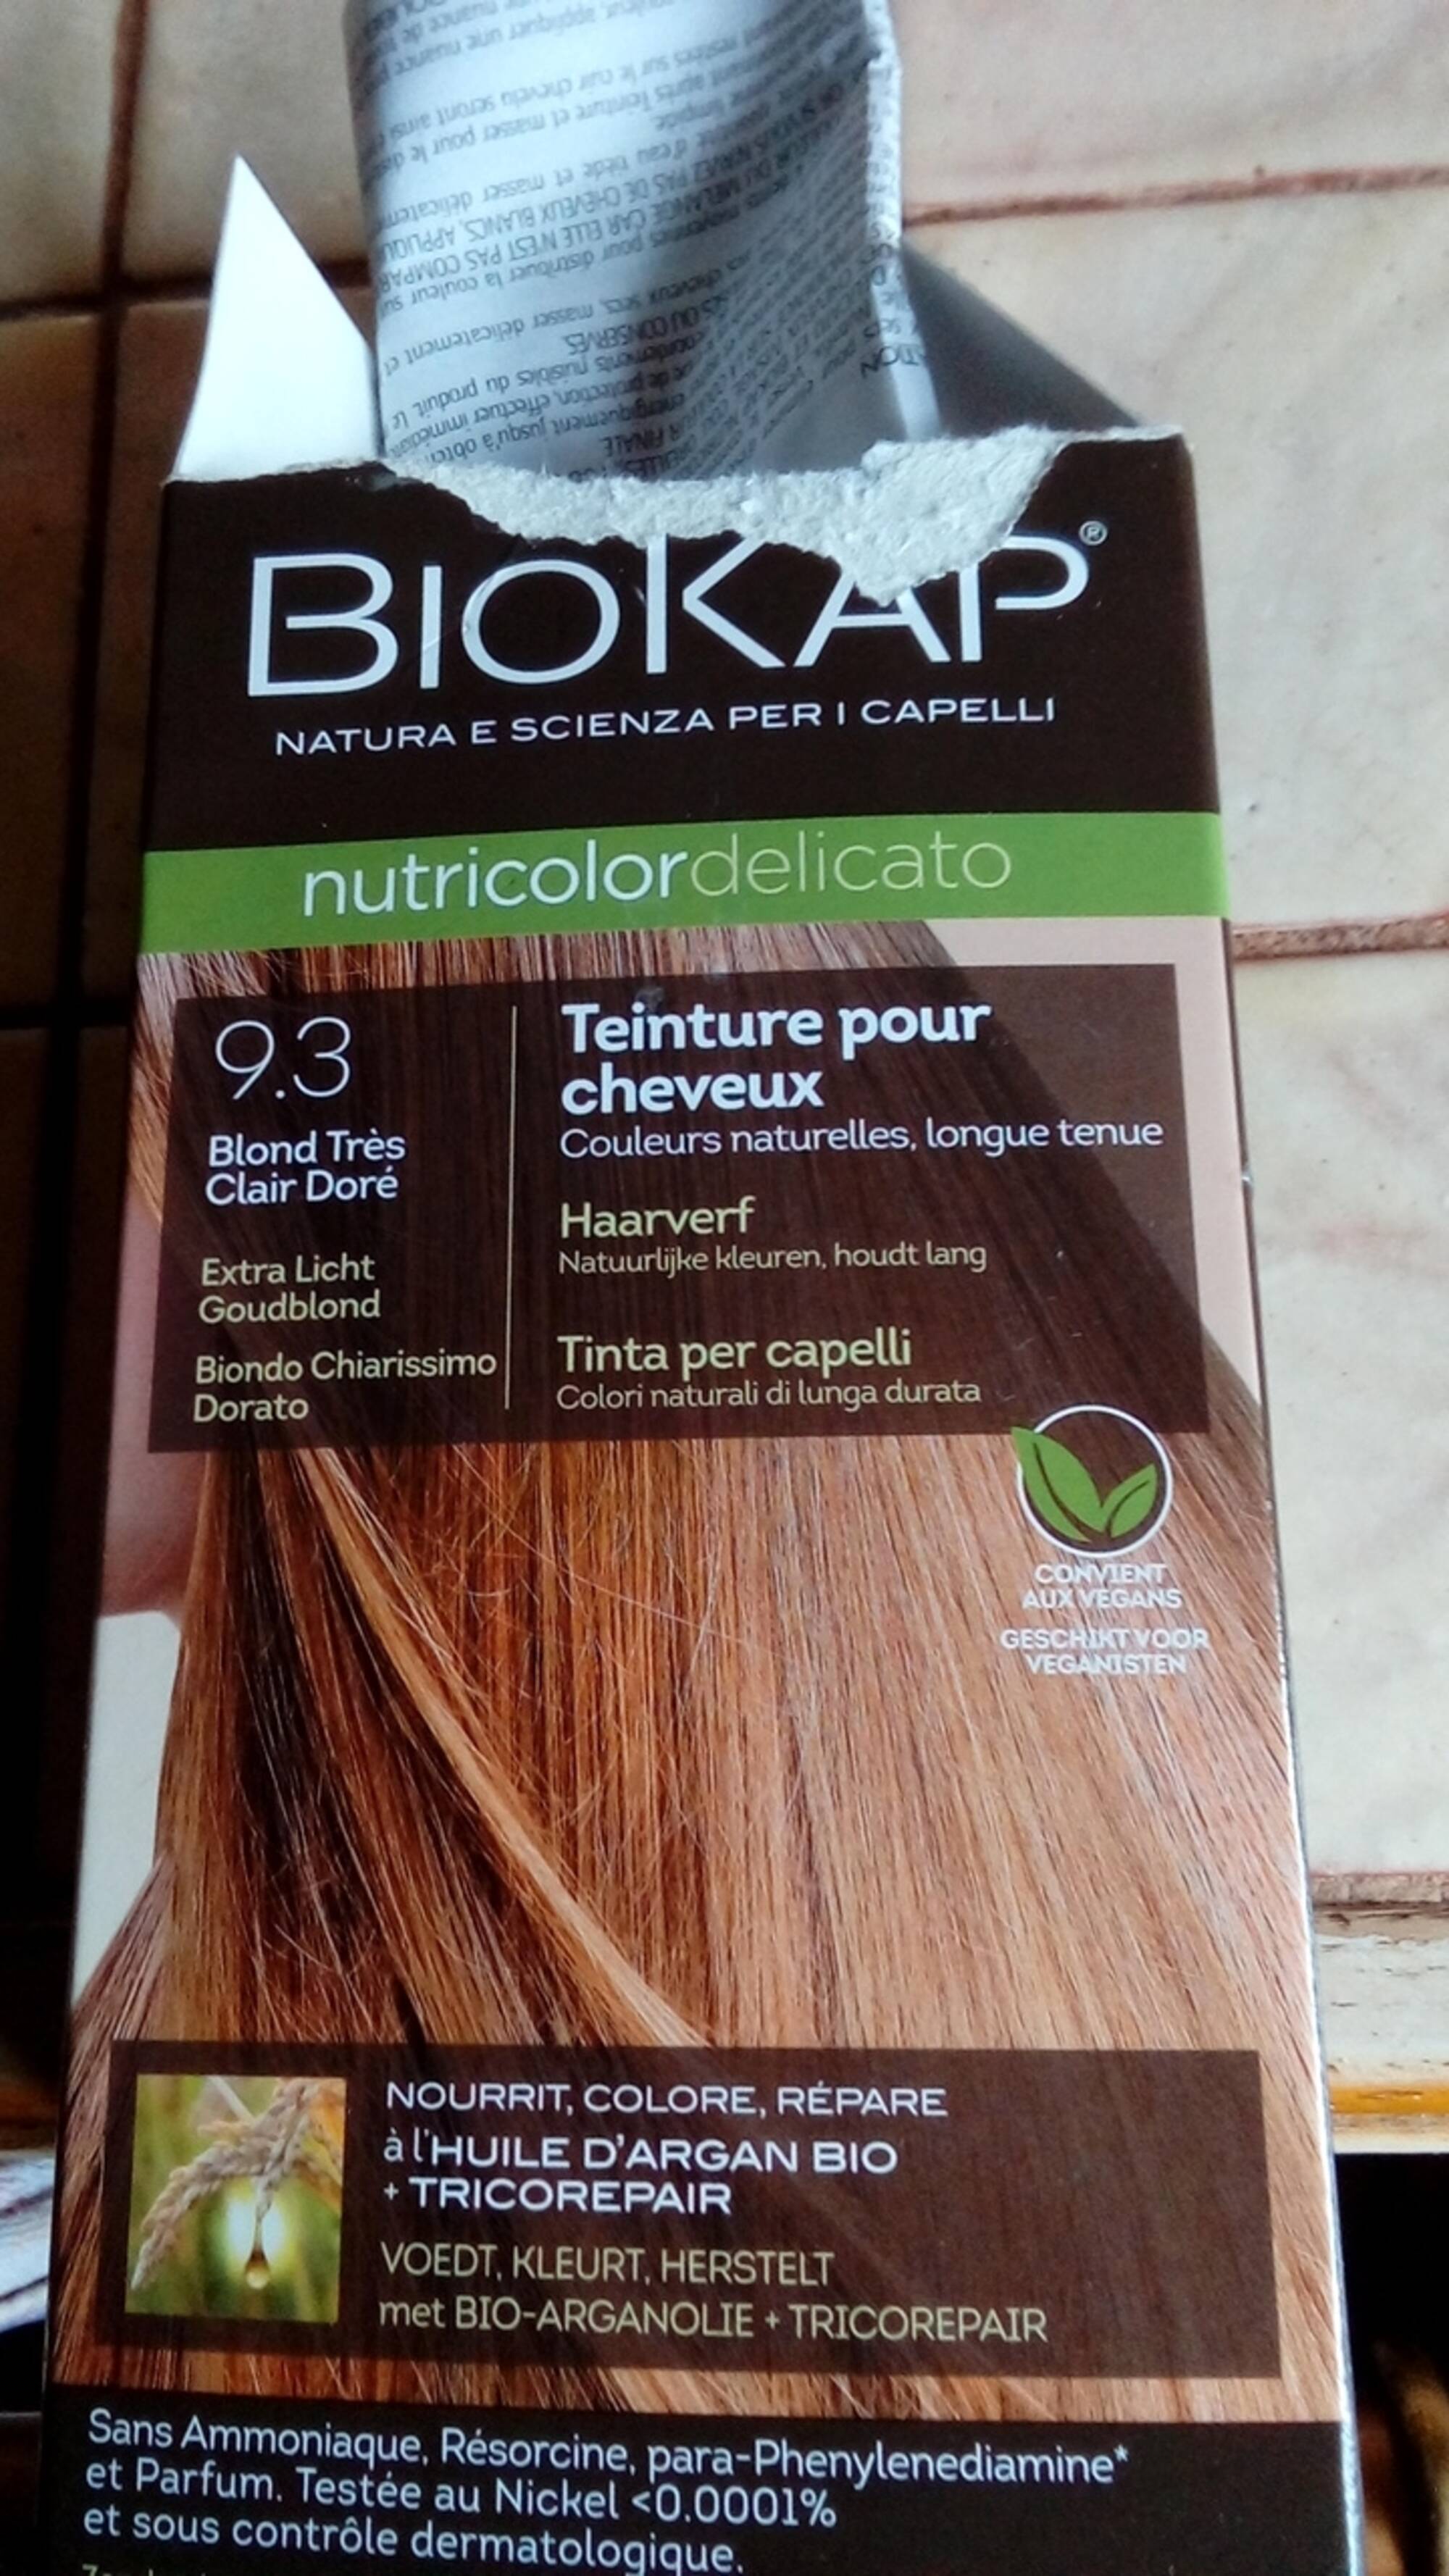 BIOKAP - Nutricolor delicato - Teinture pour cheveux 9.3 blond très clair doré